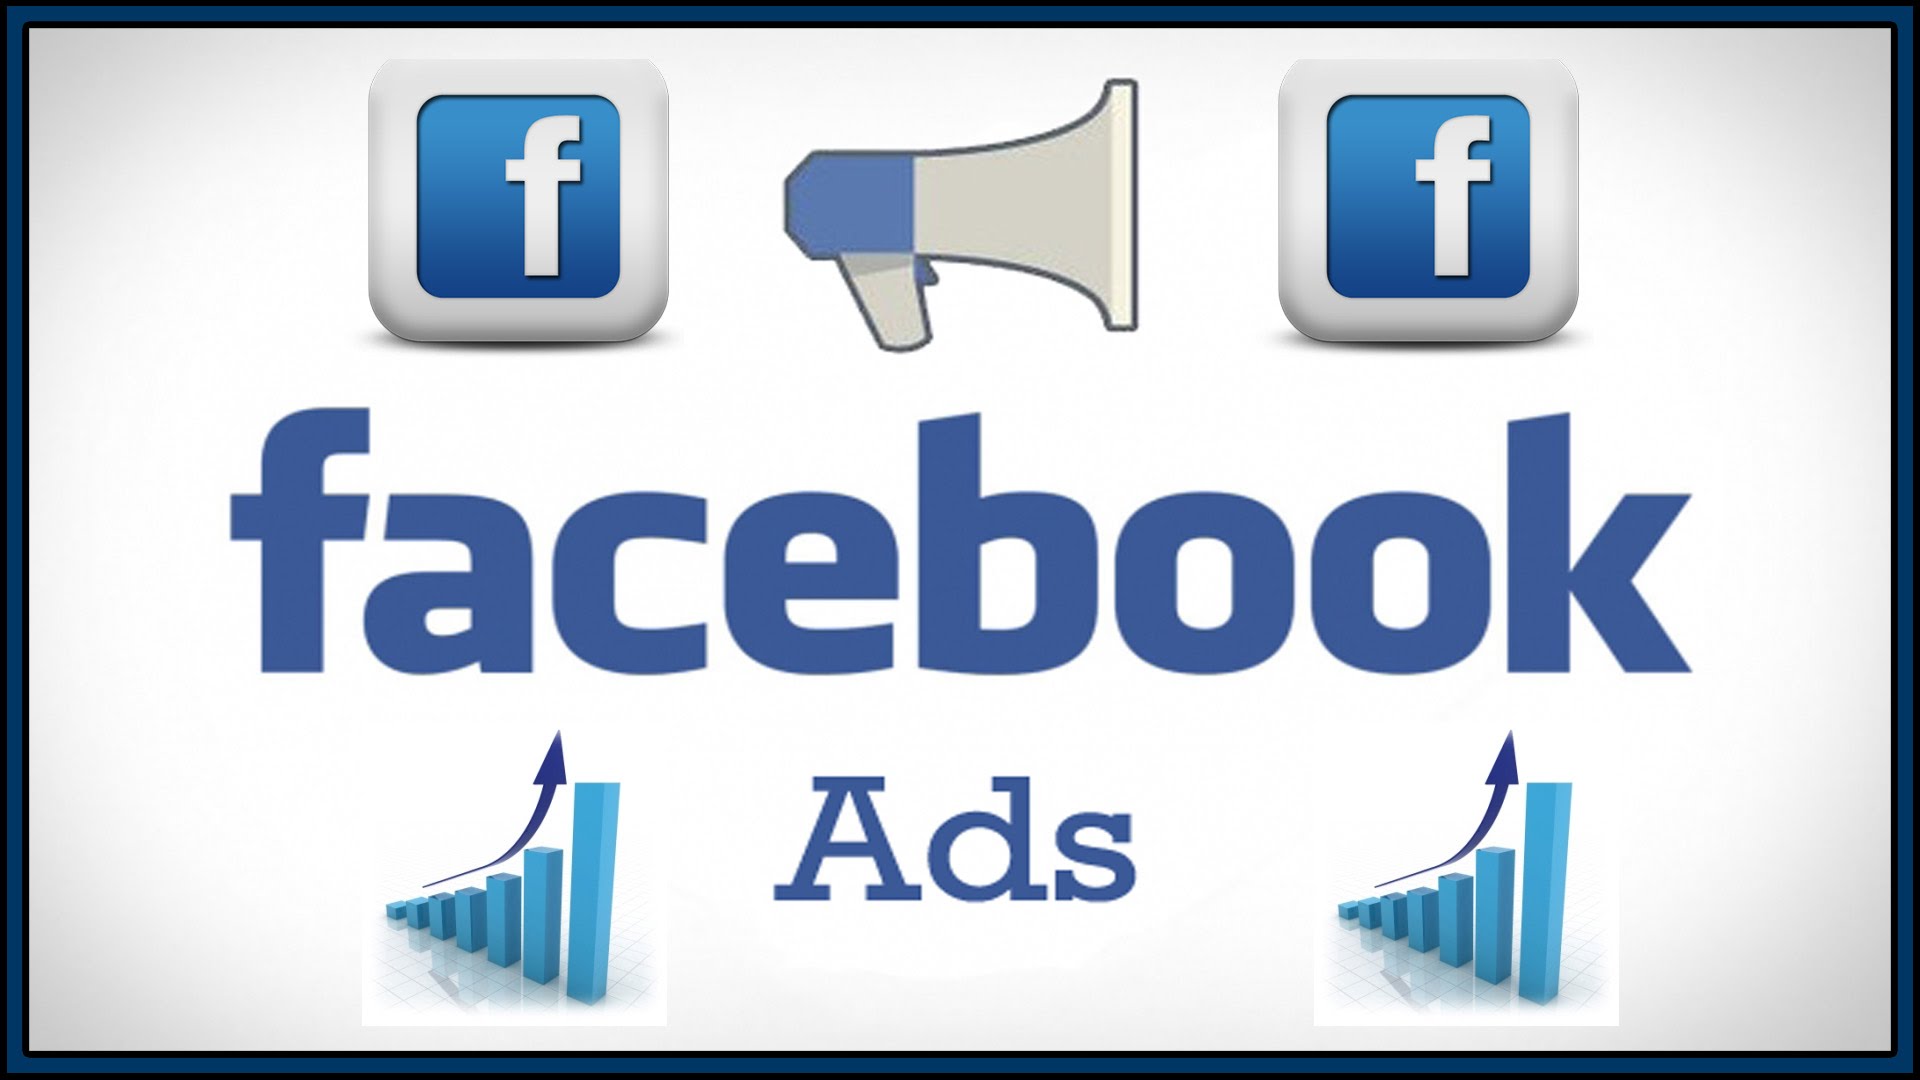 Facebook Ads là gì?